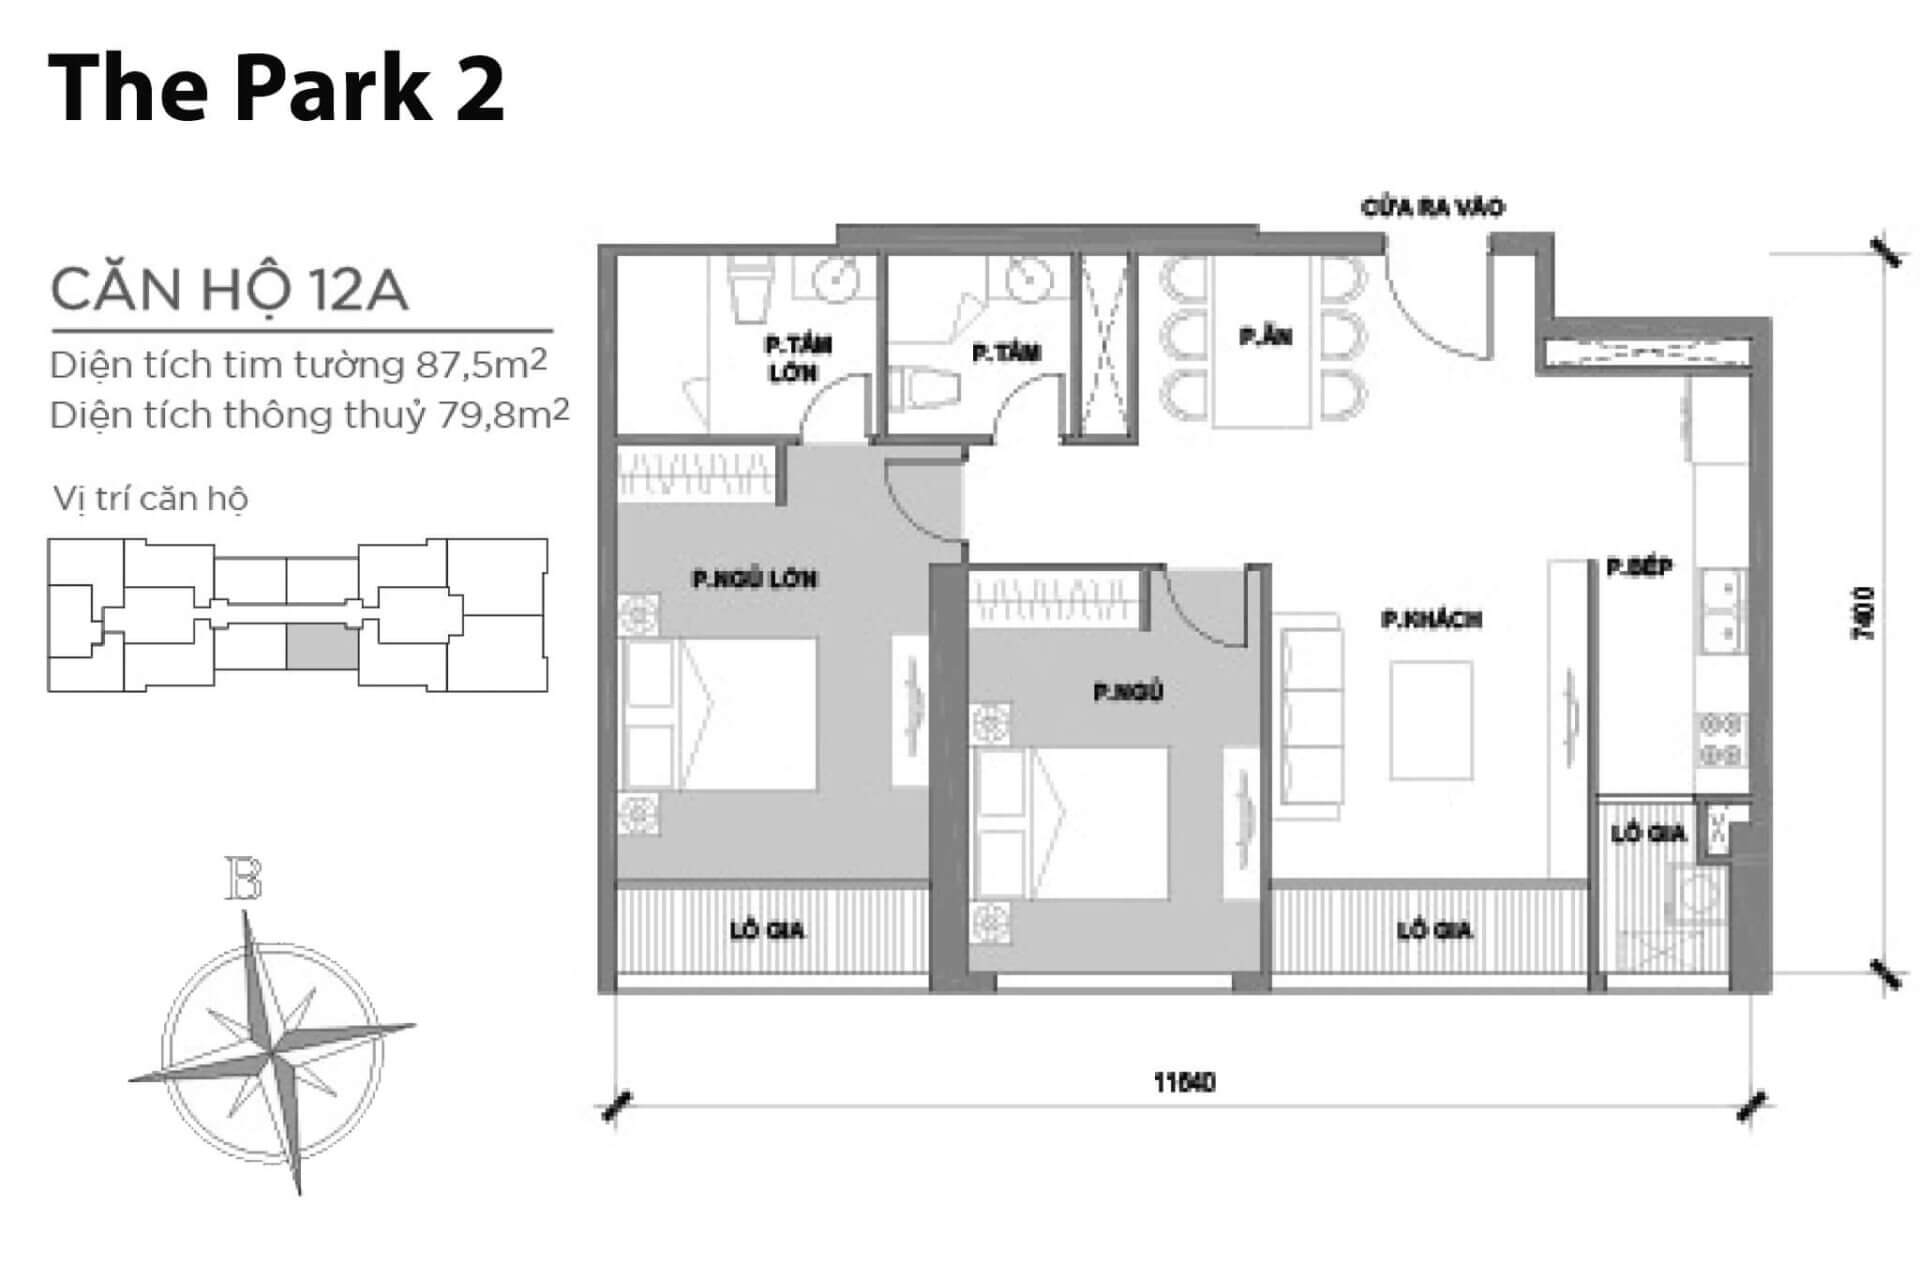 mặt bằng layout căn hộ số 12A Park 2 Vinhomes Central Park